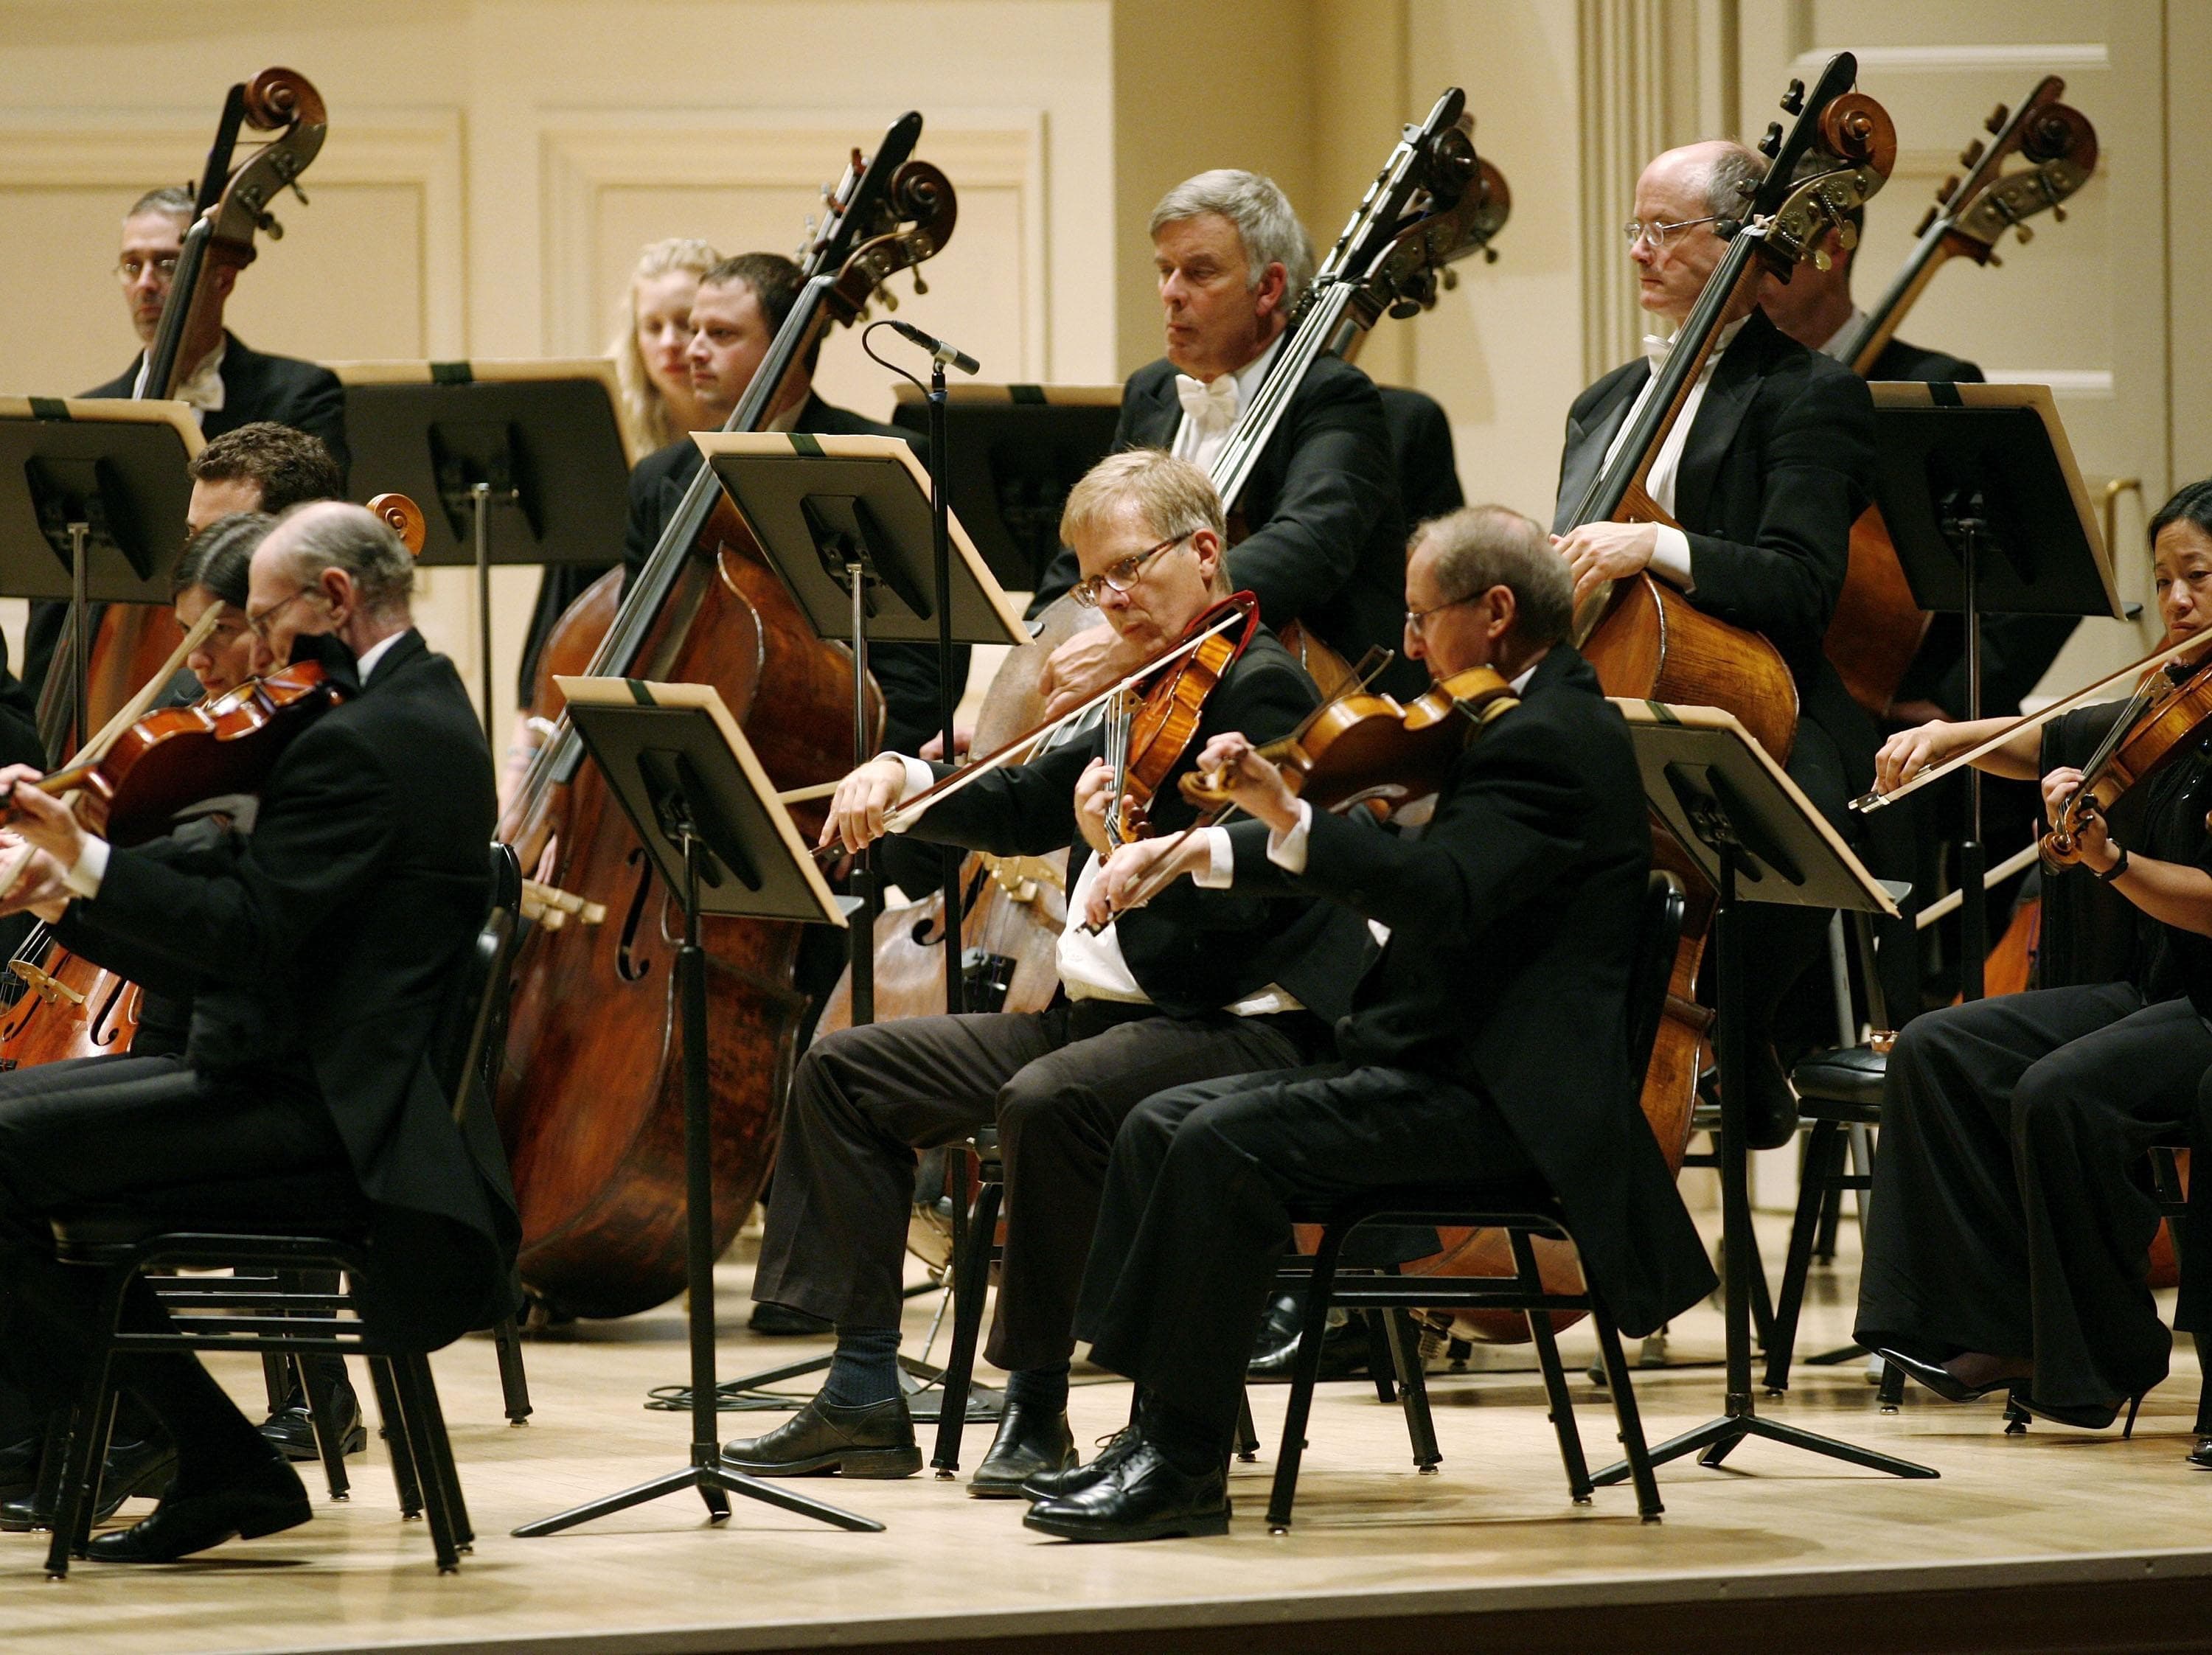 Бостонский Симфони-Холл. Лягушки играющие оркестр.